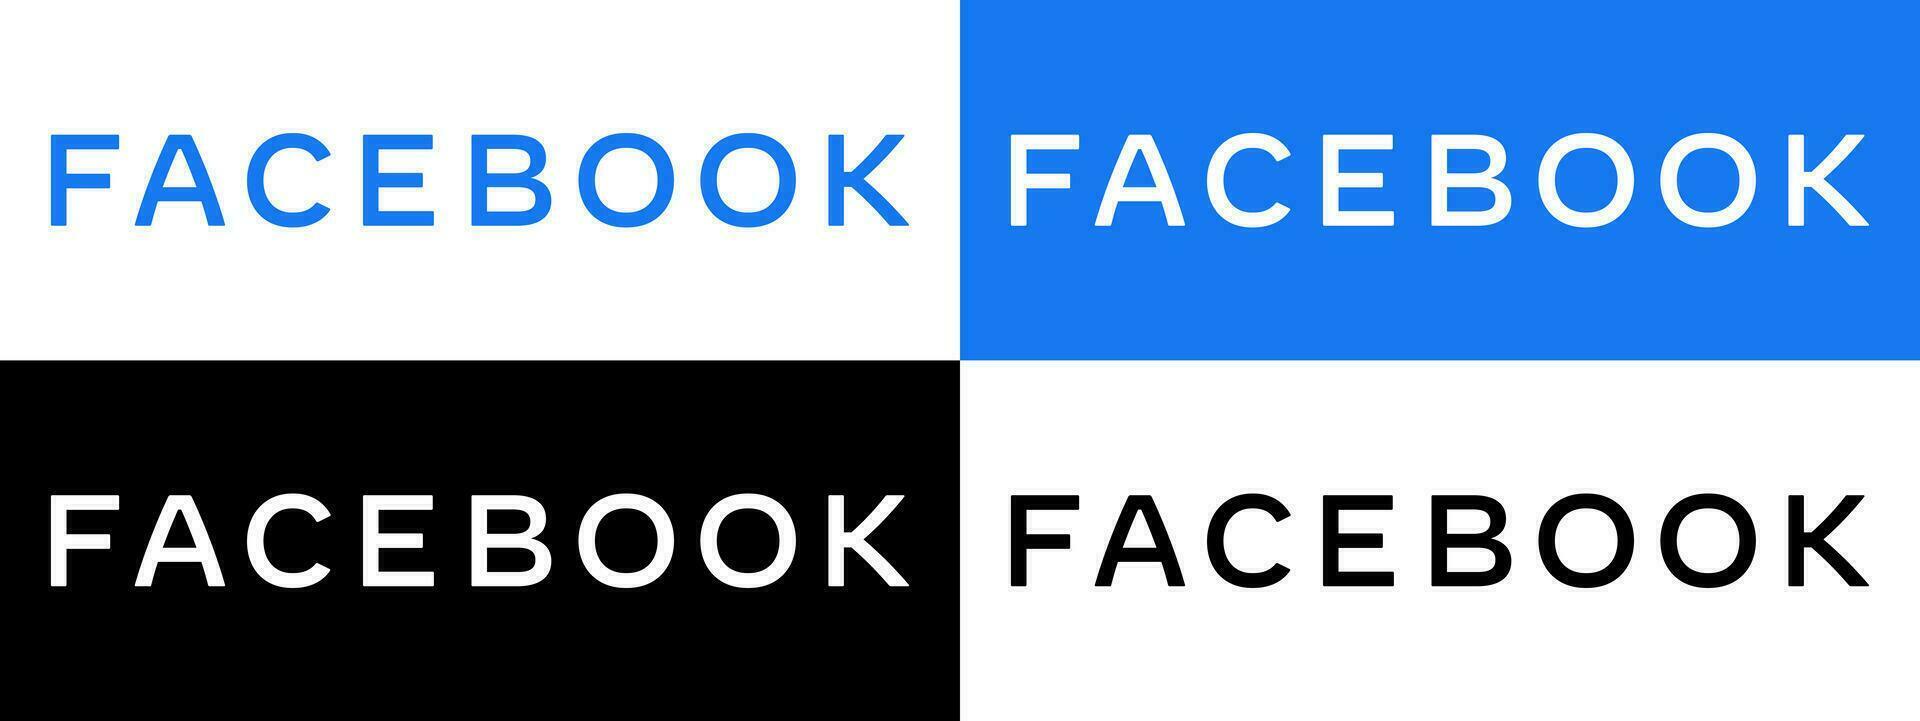 Facebook texto logotipo - vetor conjunto coleção - Preto silhueta - Mais recentes azul cor Fonte - isolado. original Facebook nome tipo para rede página, Móvel aplicativo ou impressão materiais.